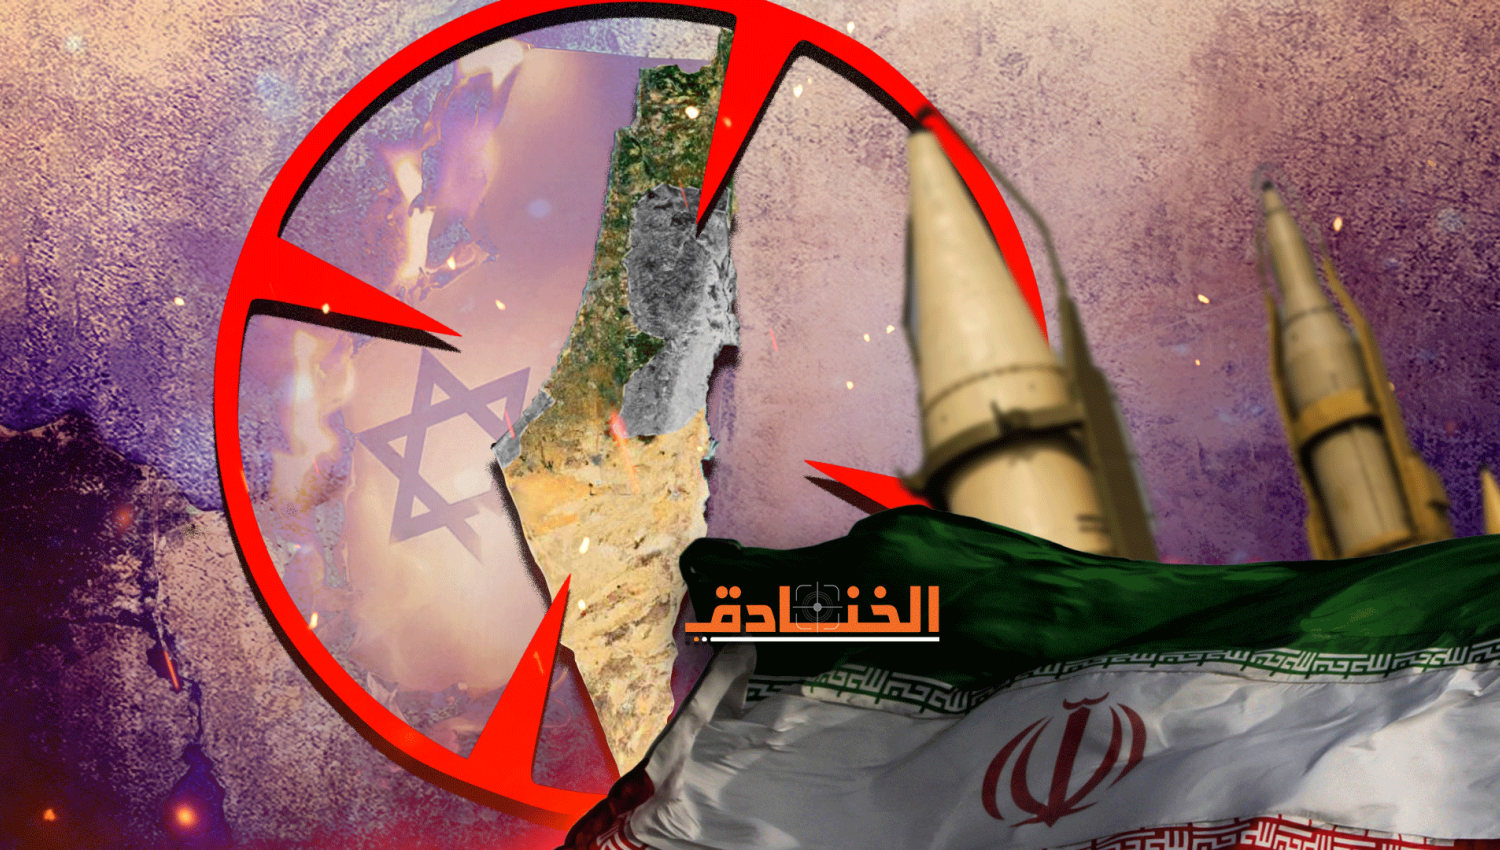 العقيد الإسرائيلي "ط": يجب ان نتعامل مع إيران كتهديد وجودي